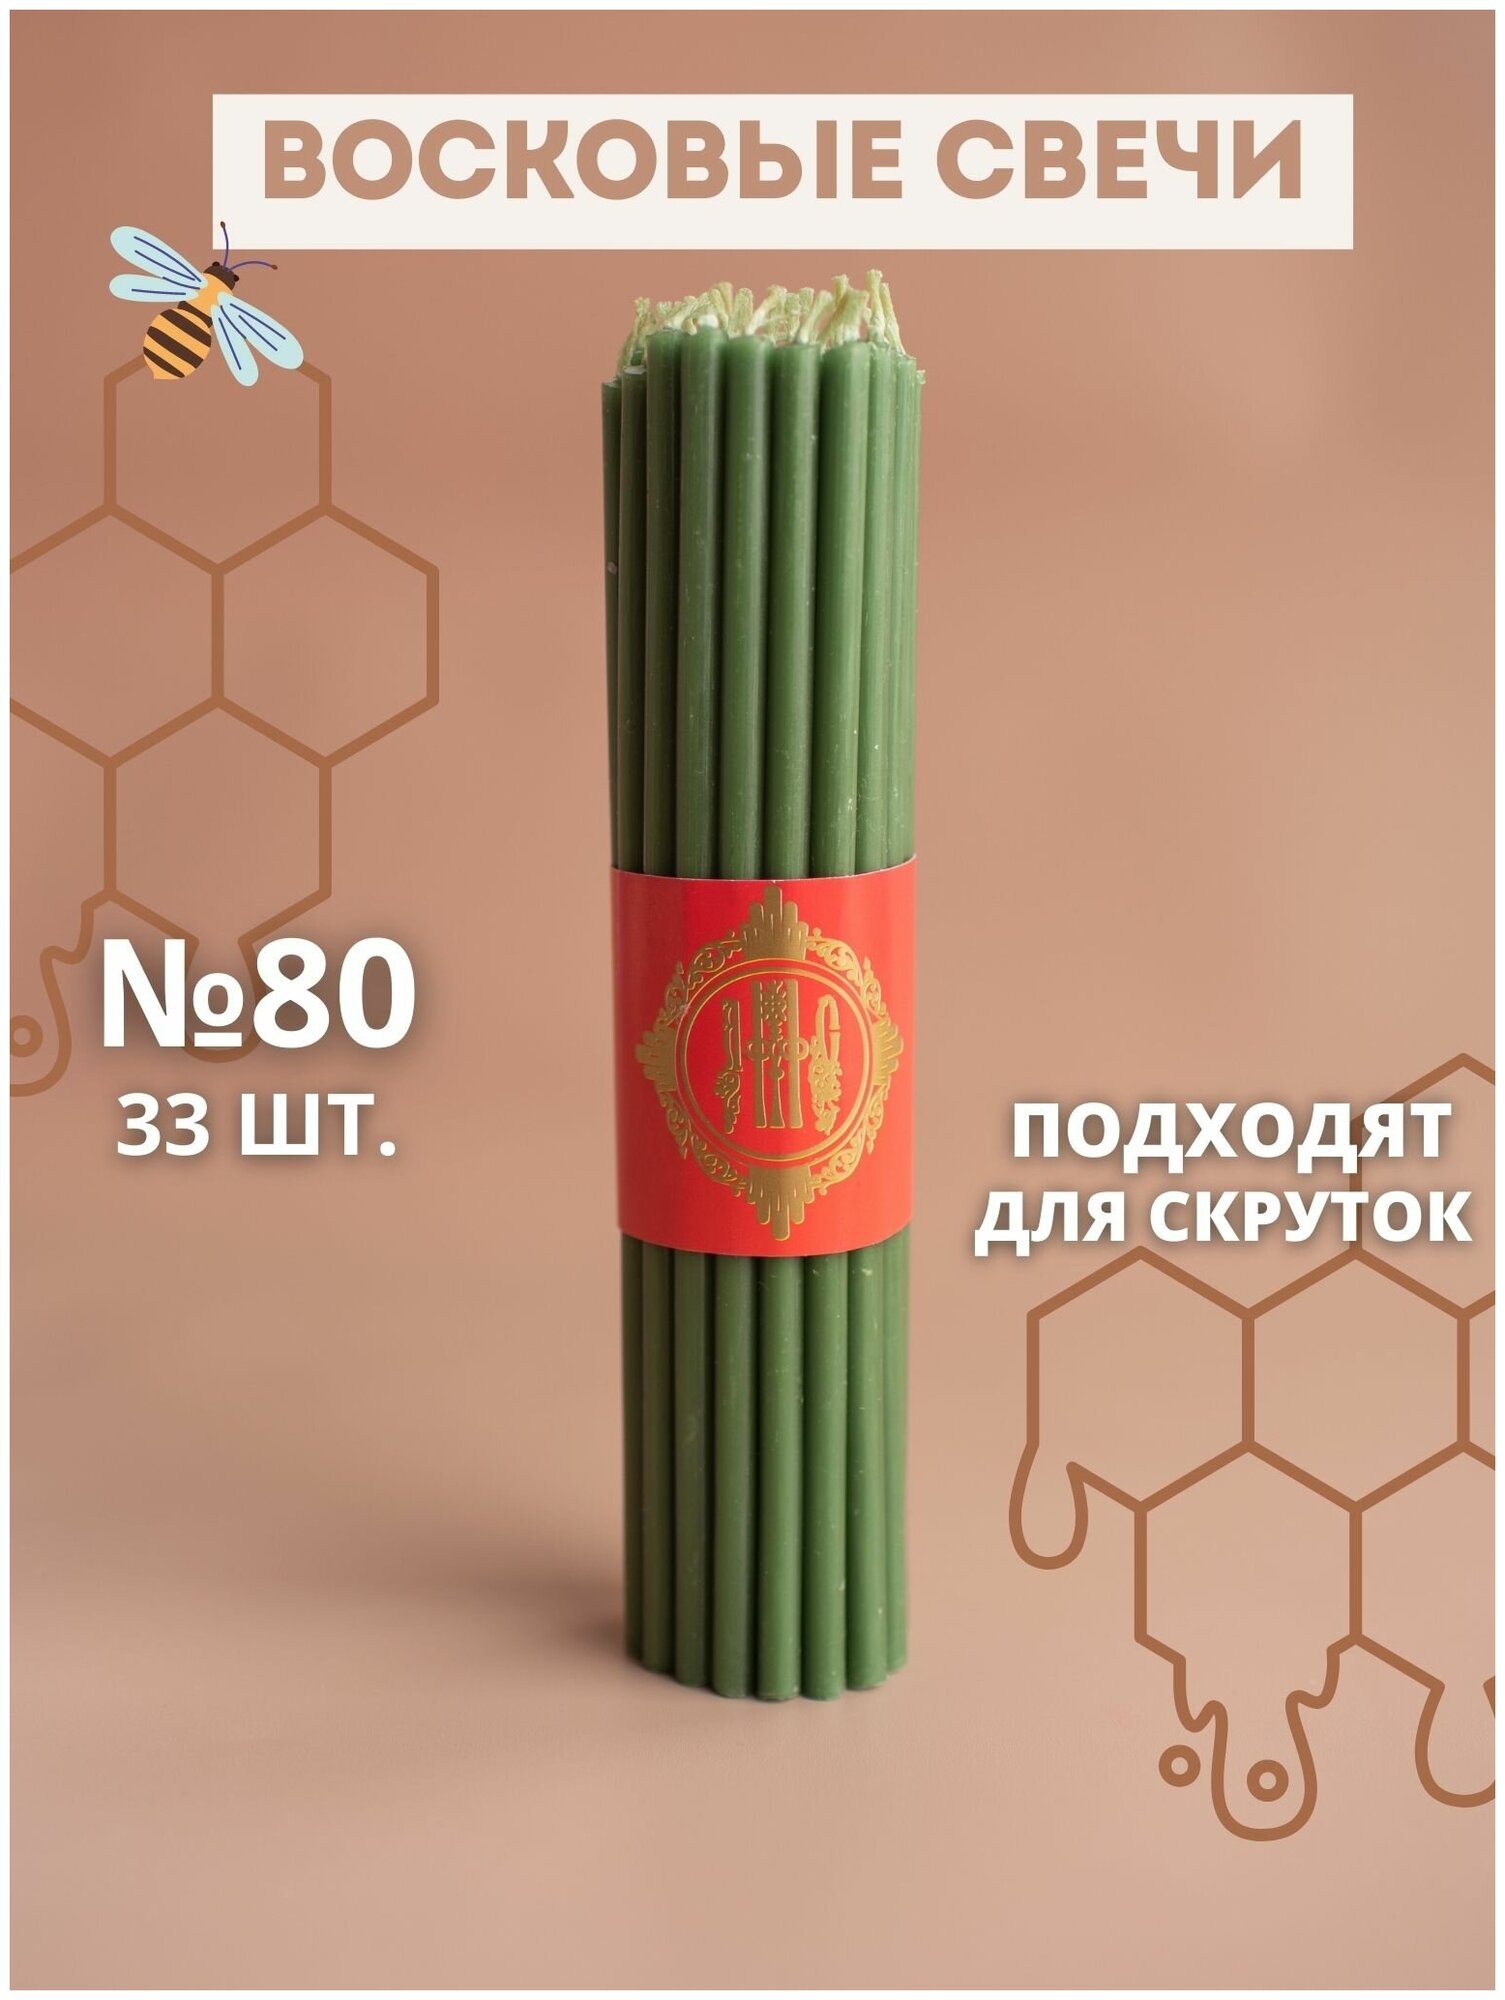 Свечи восковые зеленые эзотерические №80, 33 шт.